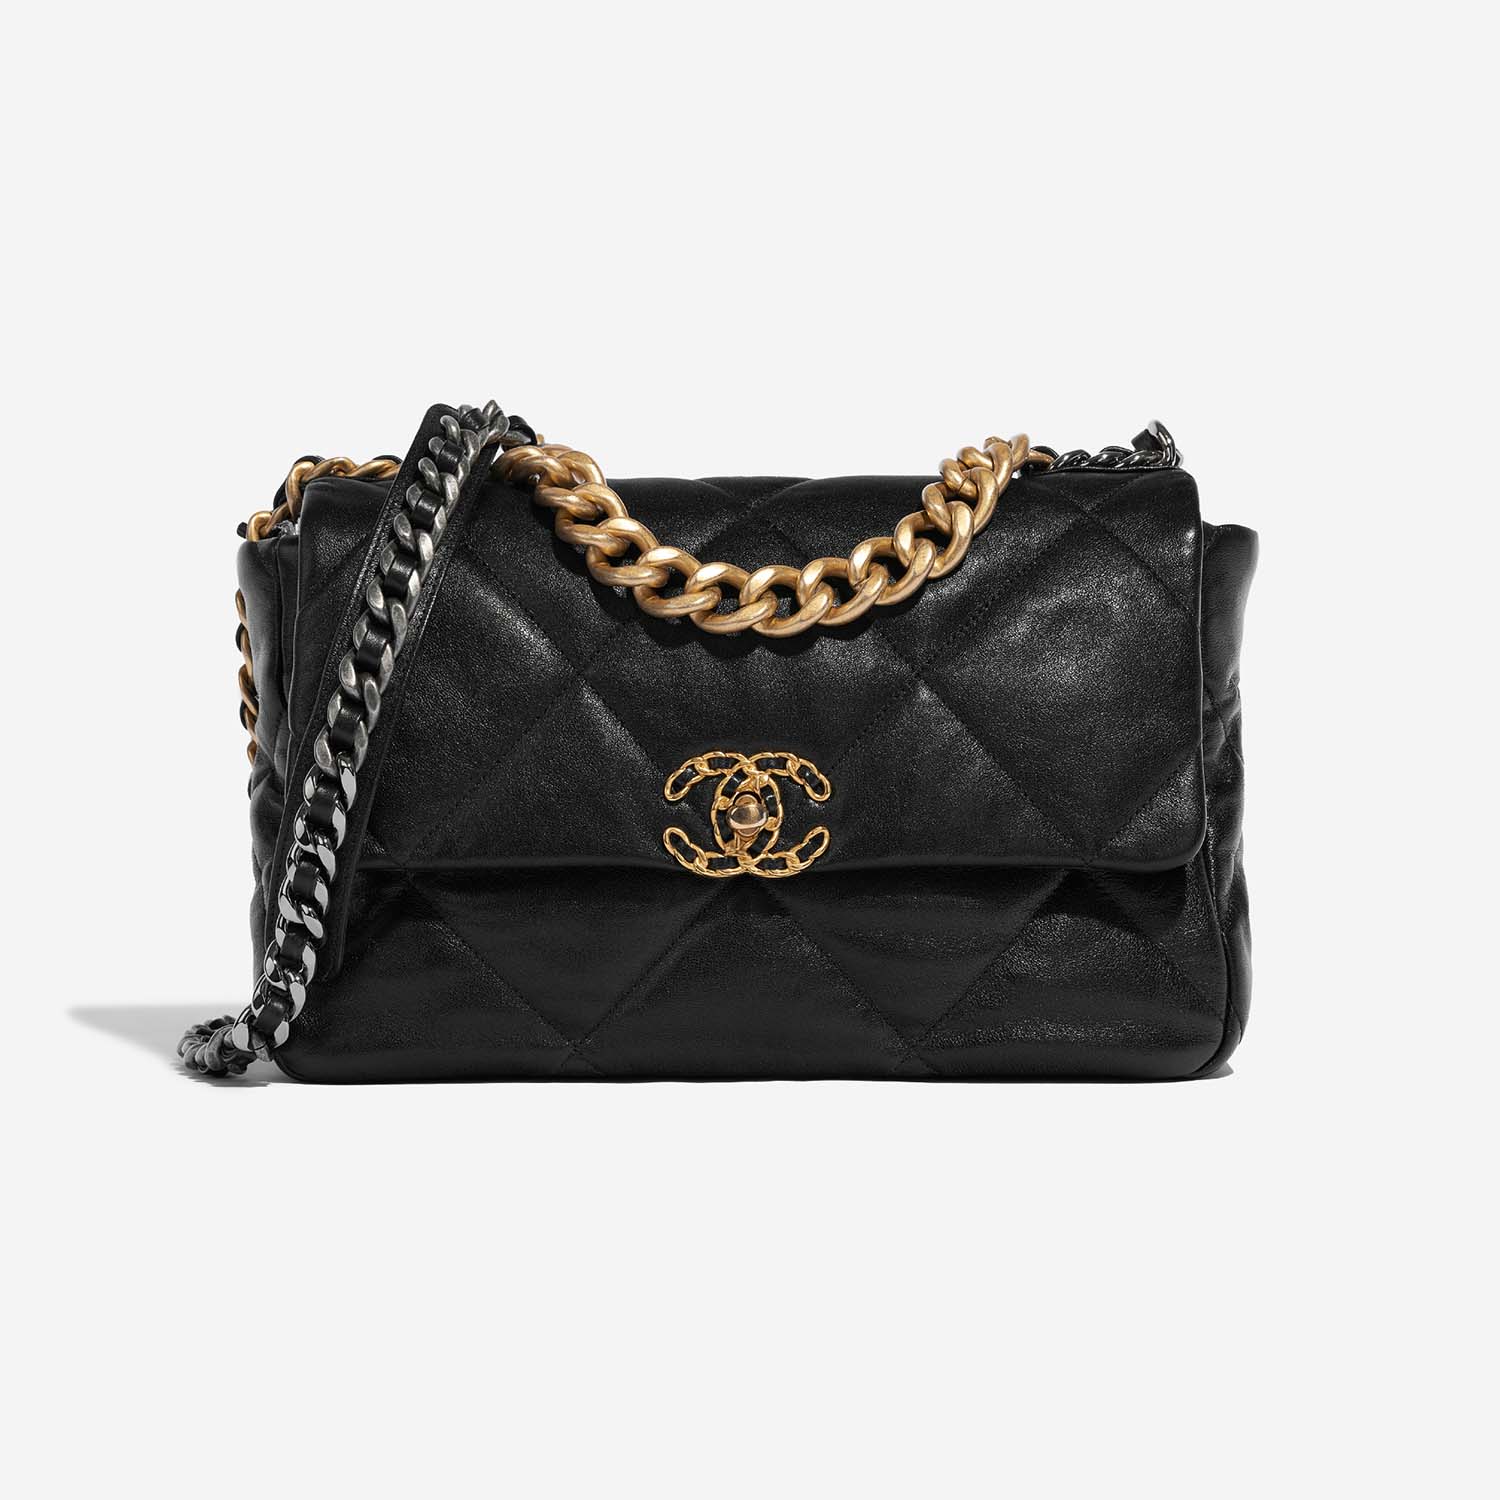 Chanel 19 LargeFlapBag Black 2F S | Sell your designer bag on Saclab.com